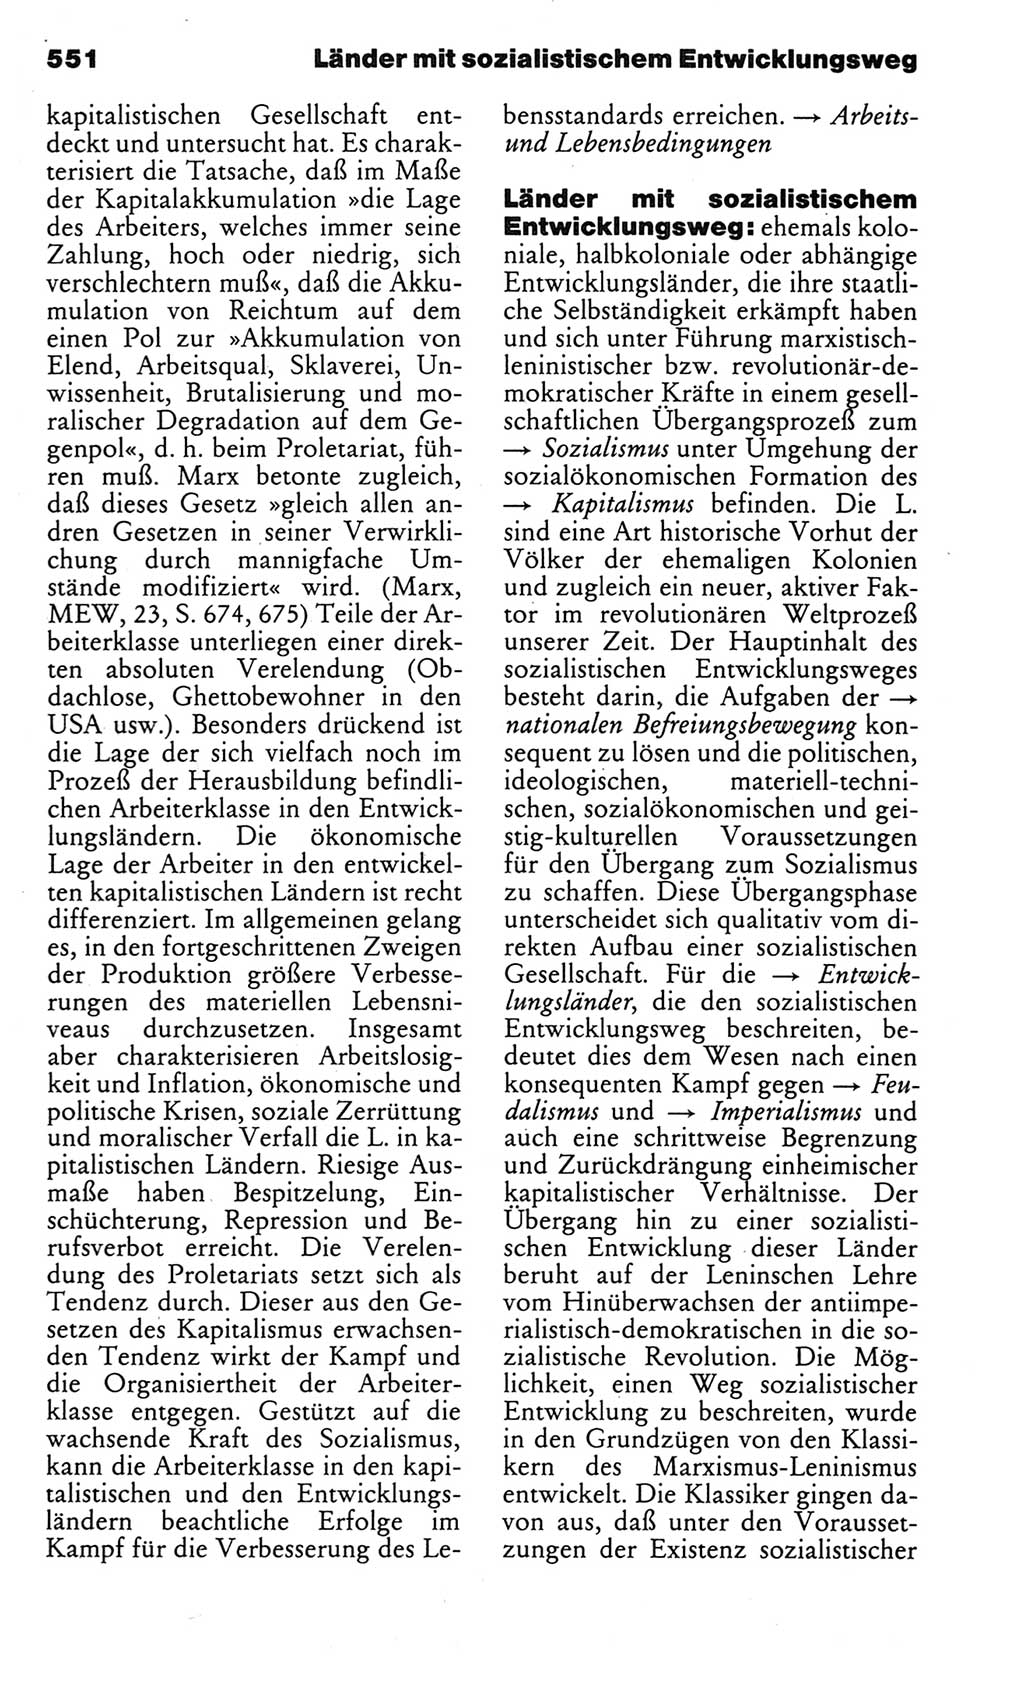 Kleines politisches Wörterbuch [Deutsche Demokratische Republik (DDR)] 1983, Seite 551 (Kl. pol. Wb. DDR 1983, S. 551)